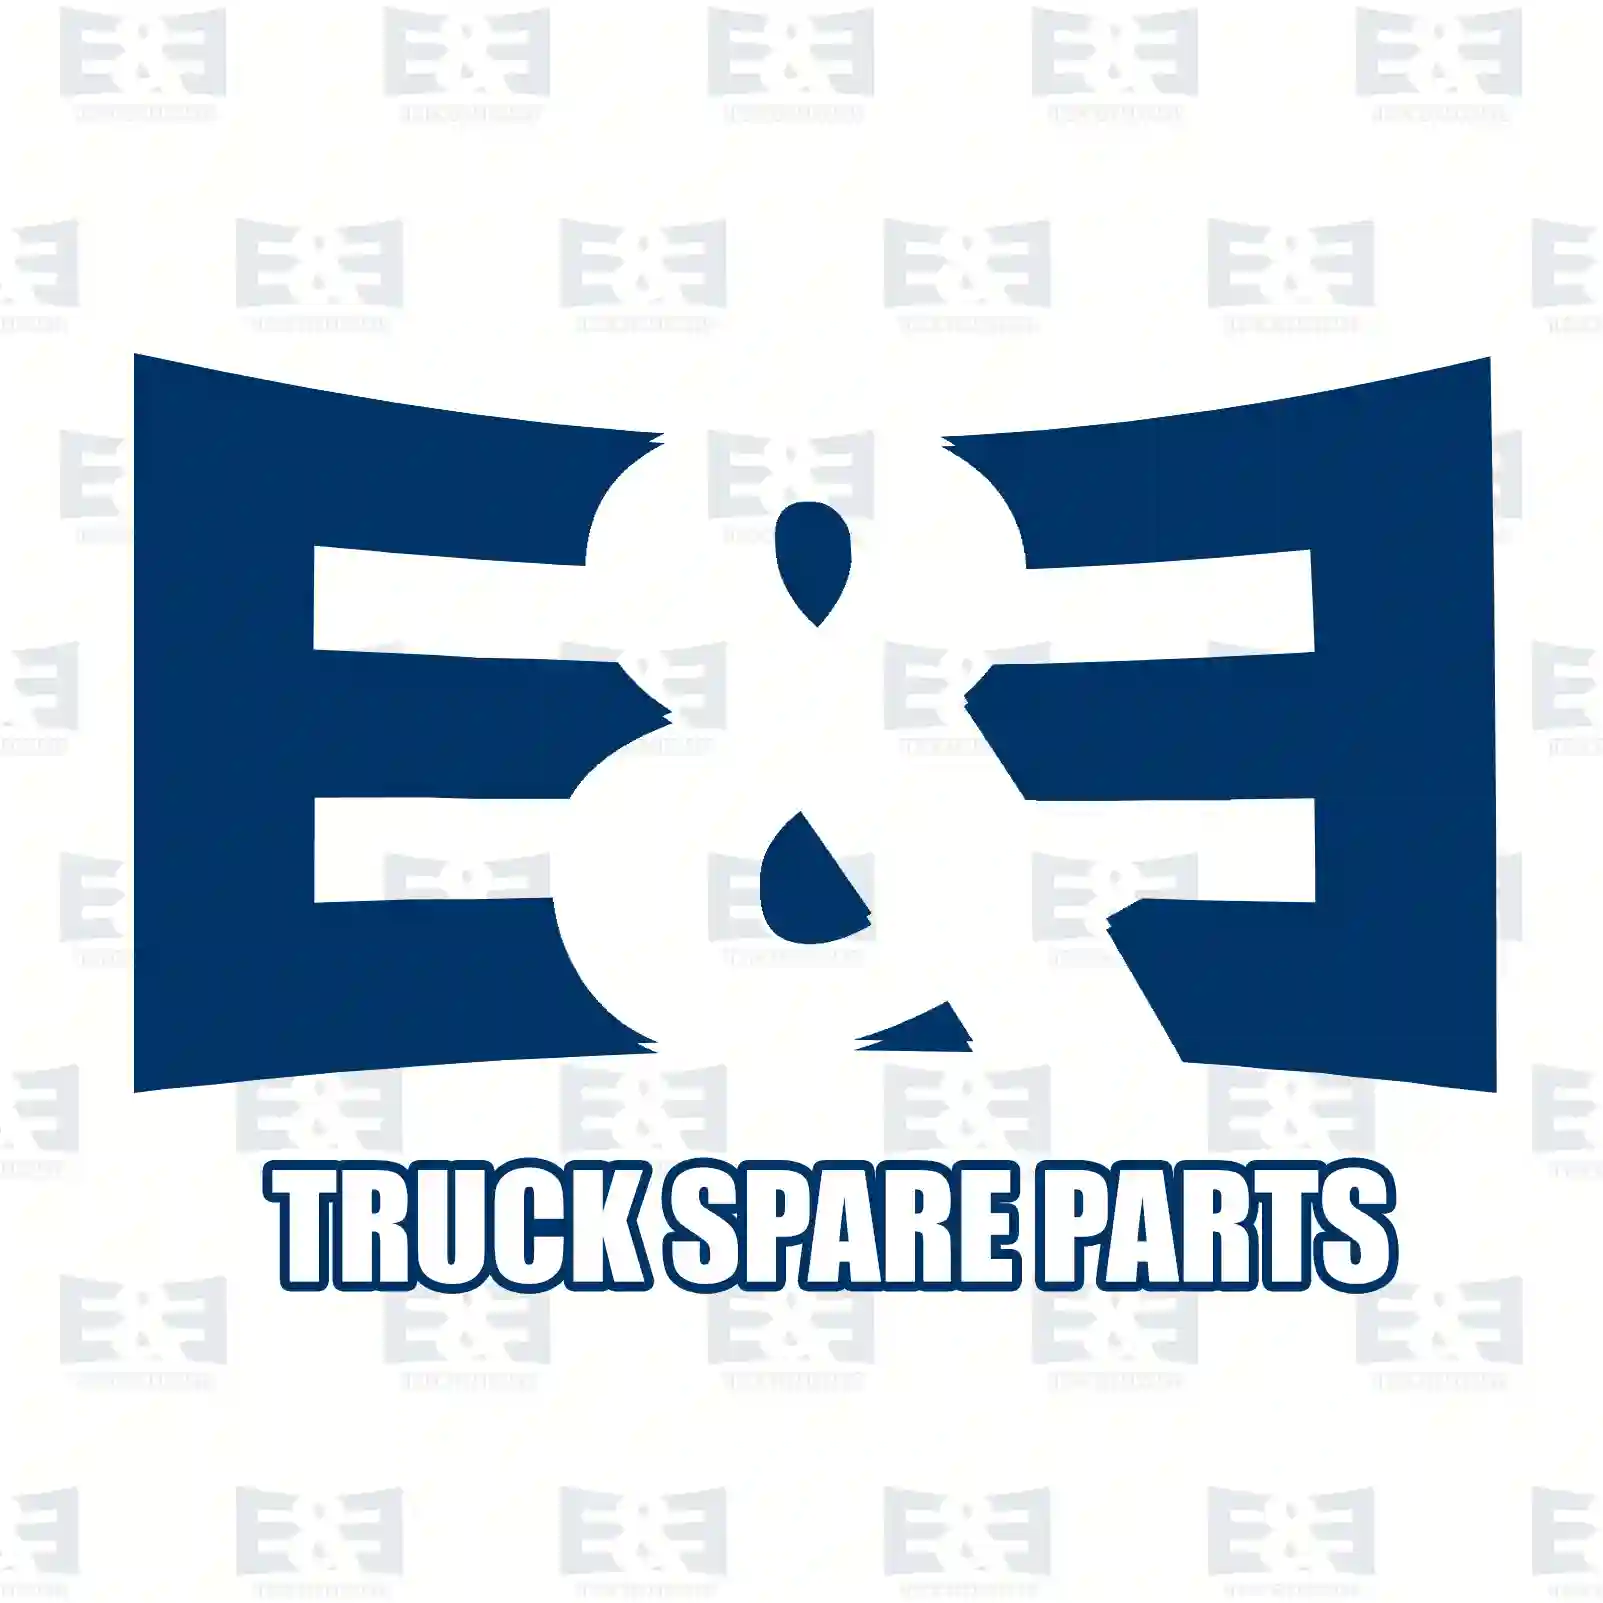 Air dryer, 2E2294506, 20553336 ||  2E2294506 E&E Truck Spare Parts | Truck Spare Parts, Auotomotive Spare Parts Air dryer, 2E2294506, 20553336 ||  2E2294506 E&E Truck Spare Parts | Truck Spare Parts, Auotomotive Spare Parts